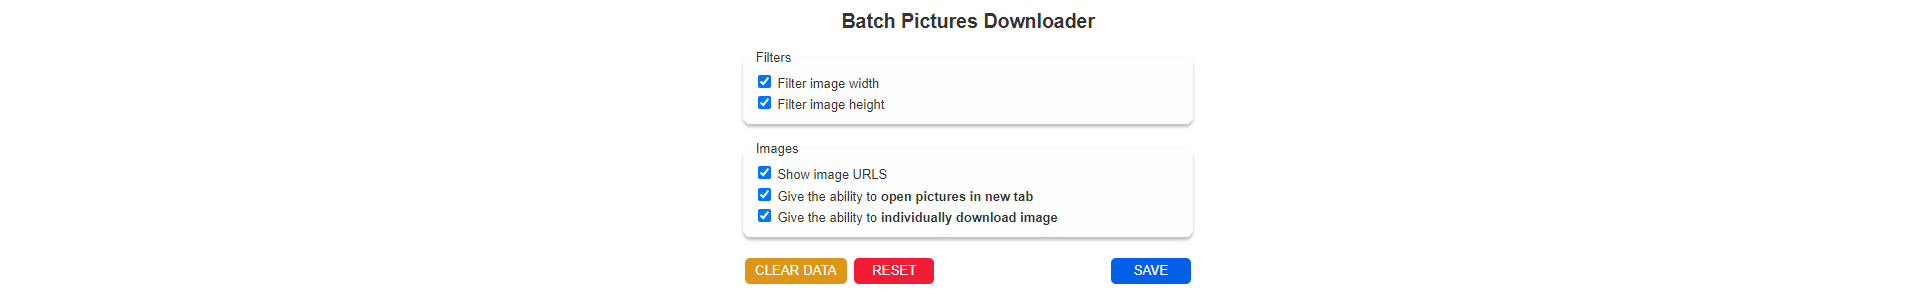 Image Downloader 插件使用教程